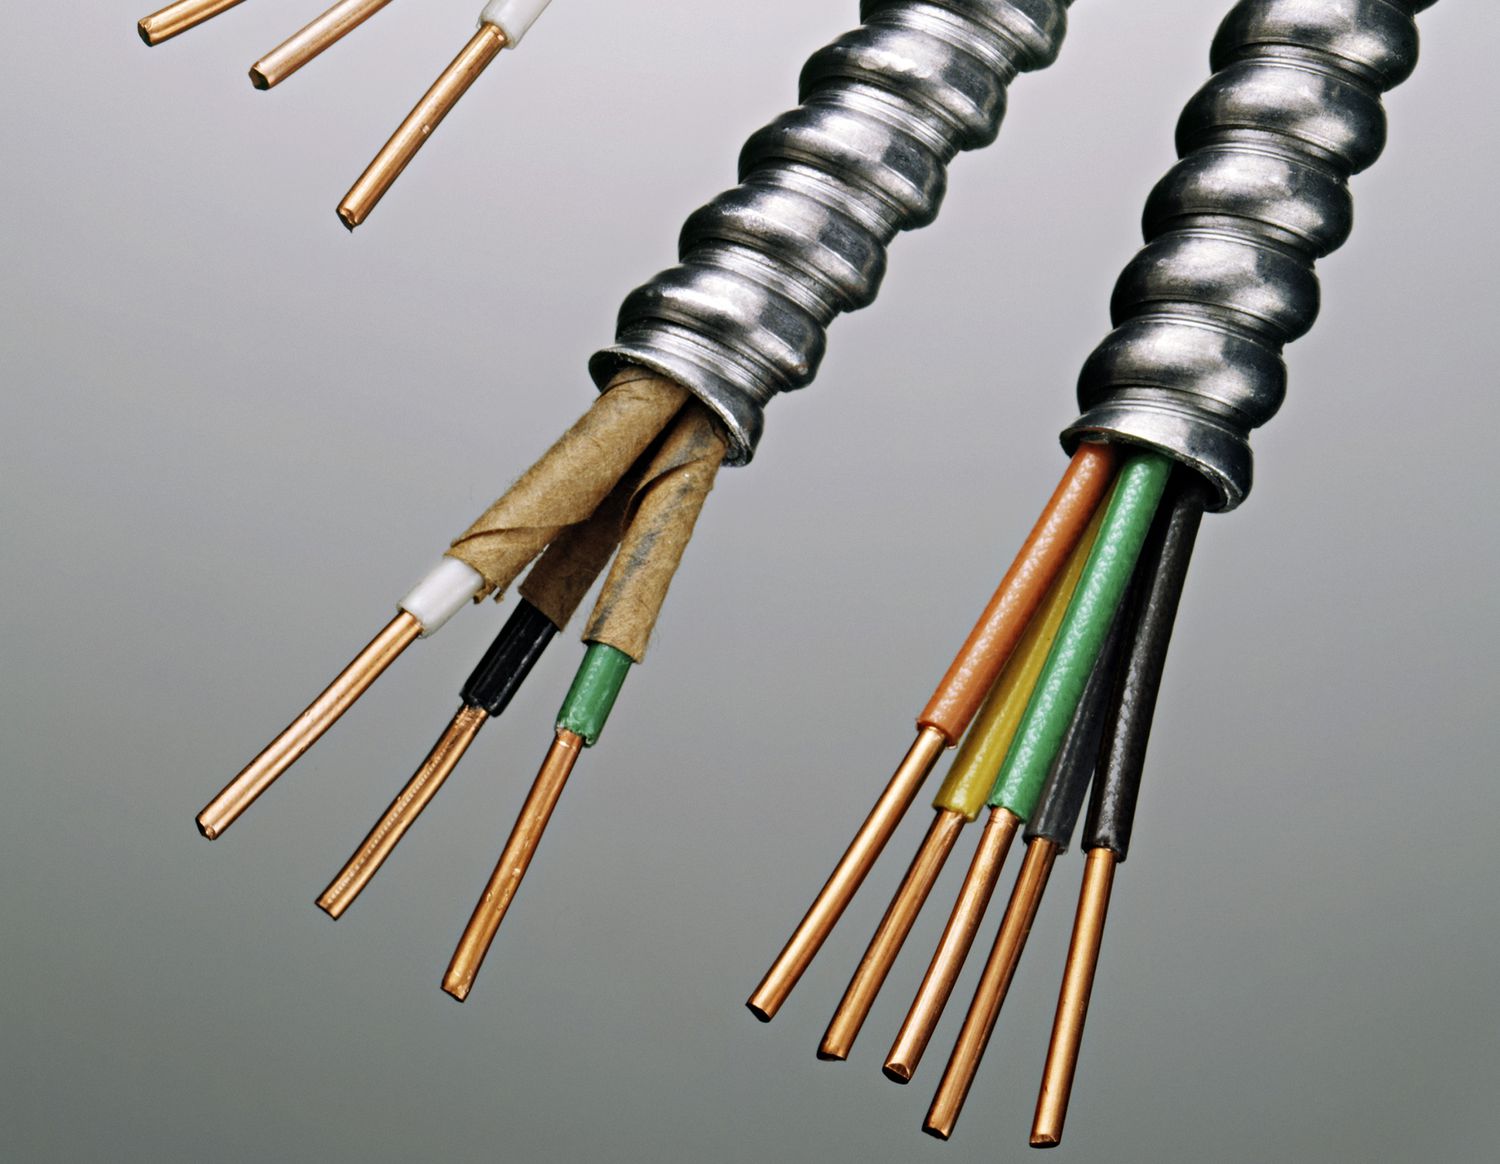 BX Cable and Wire: Lo que debe saber antes de comprar